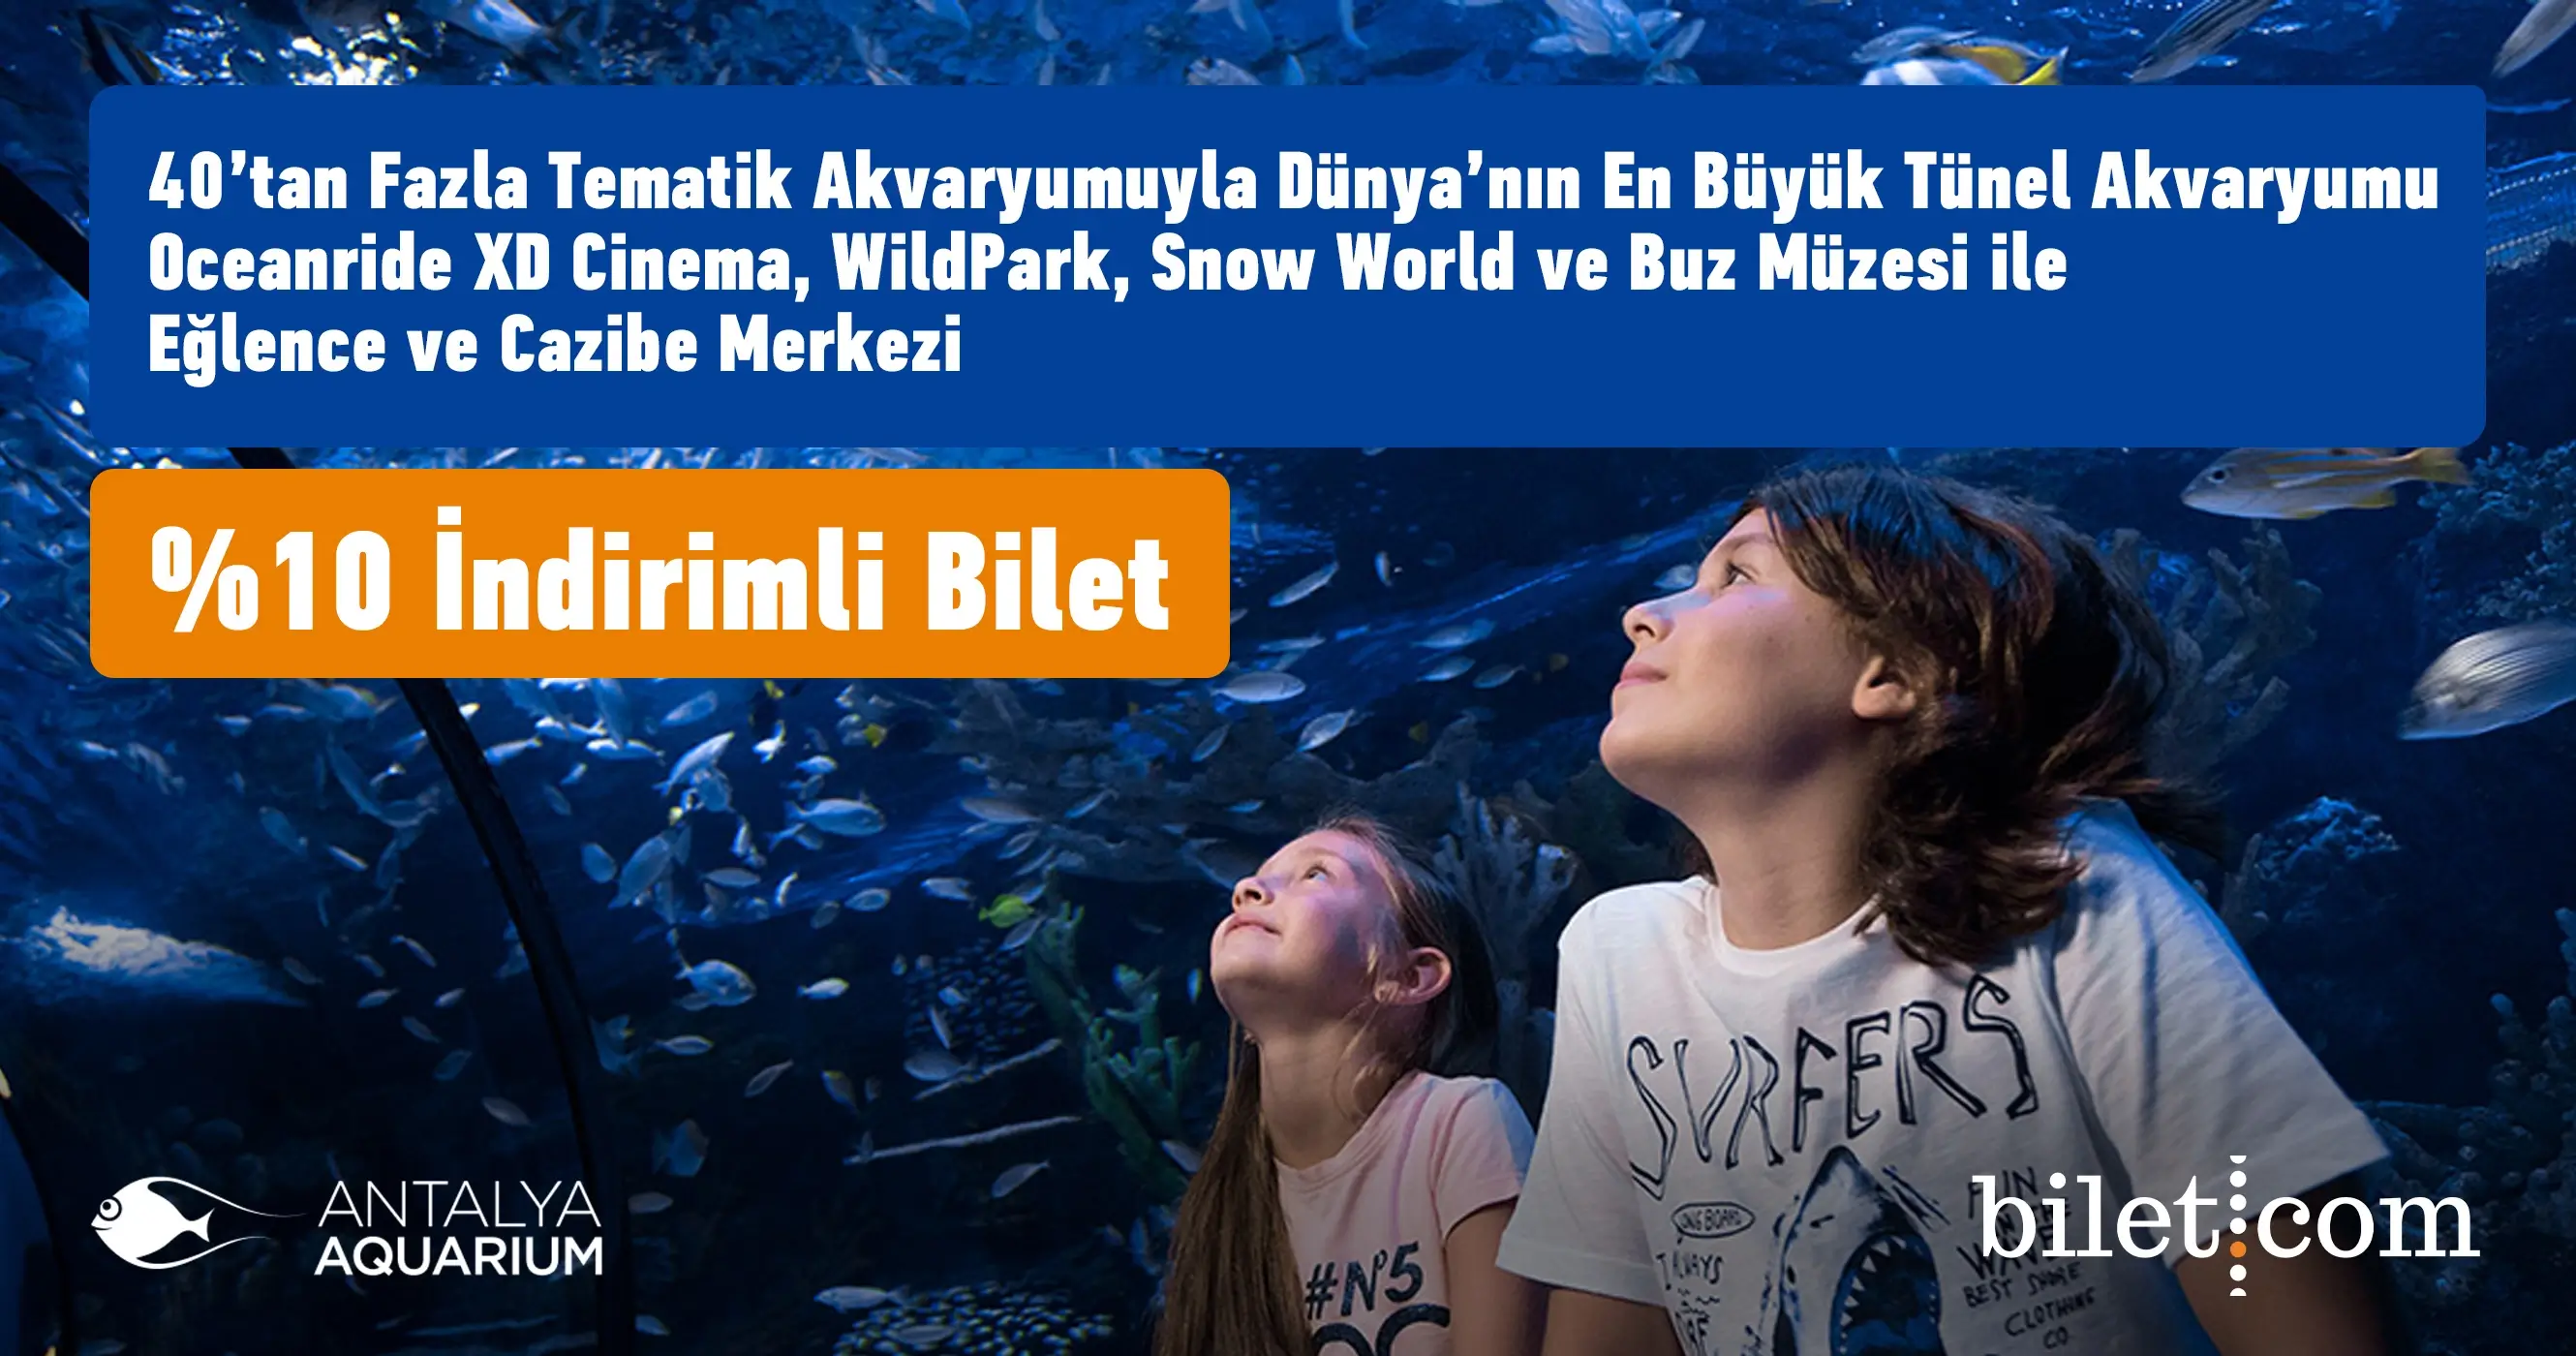 Antalya-Aquarium Ticket – 1